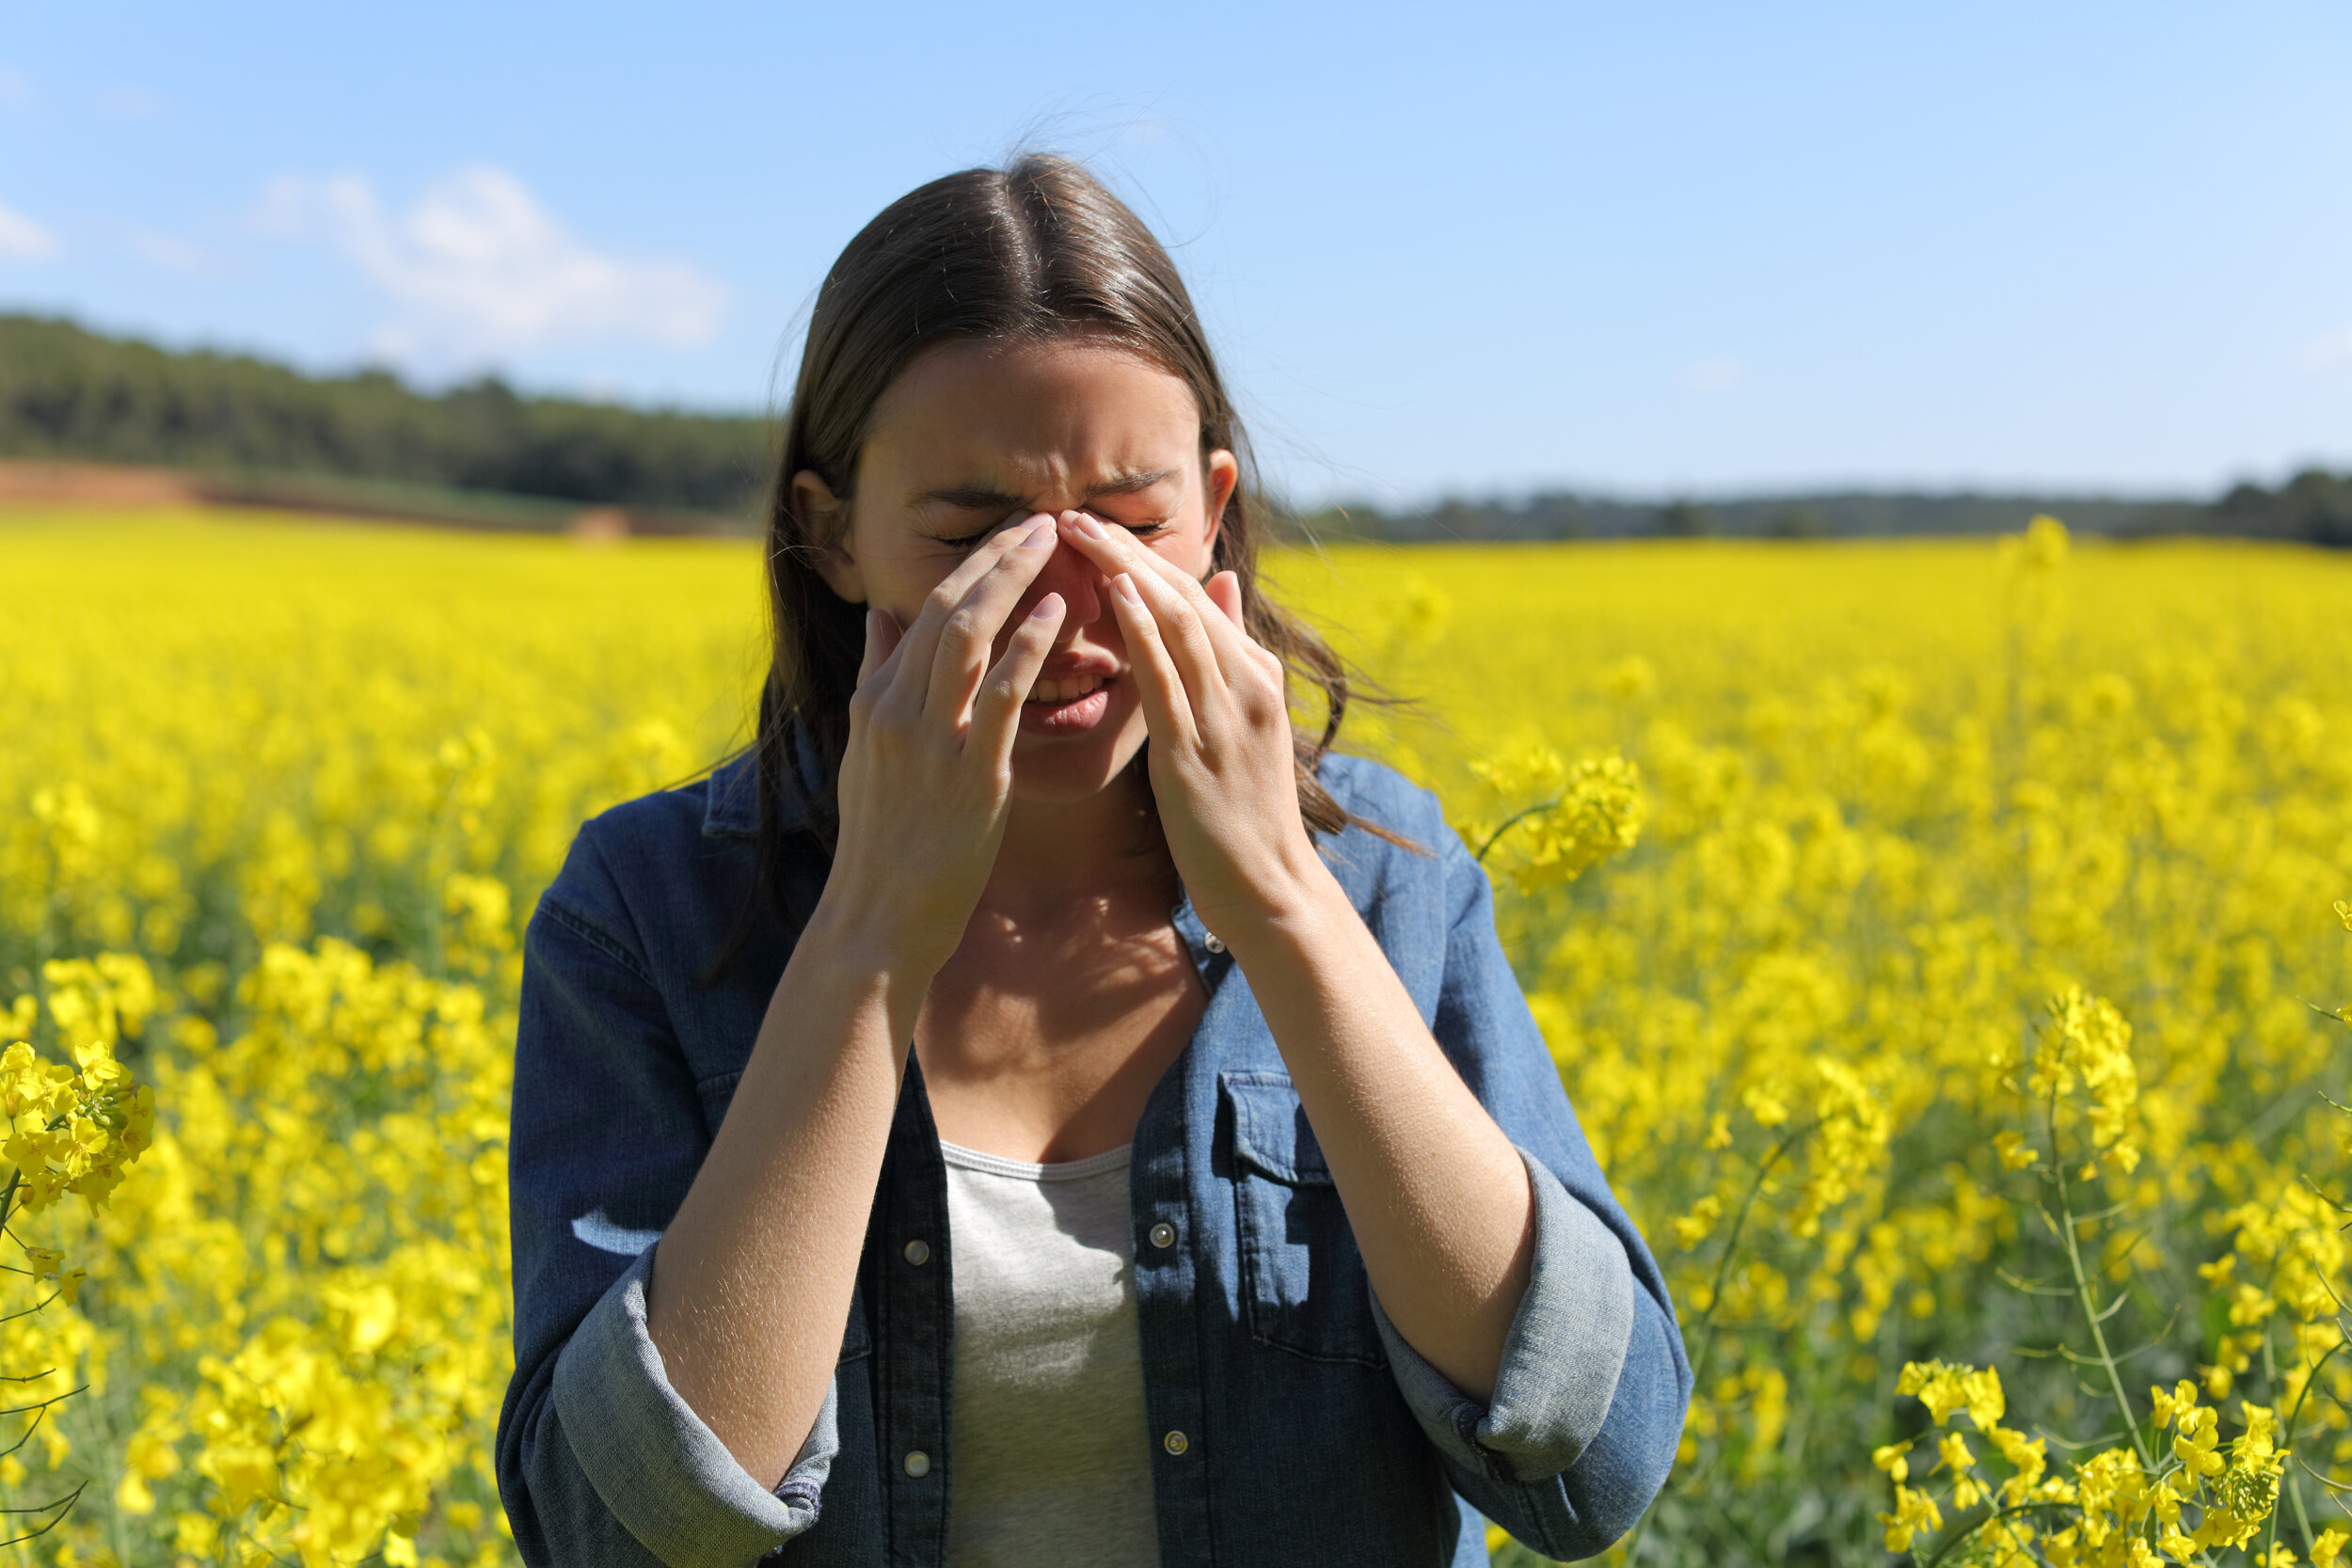 The Link Between Gardening and Allergies